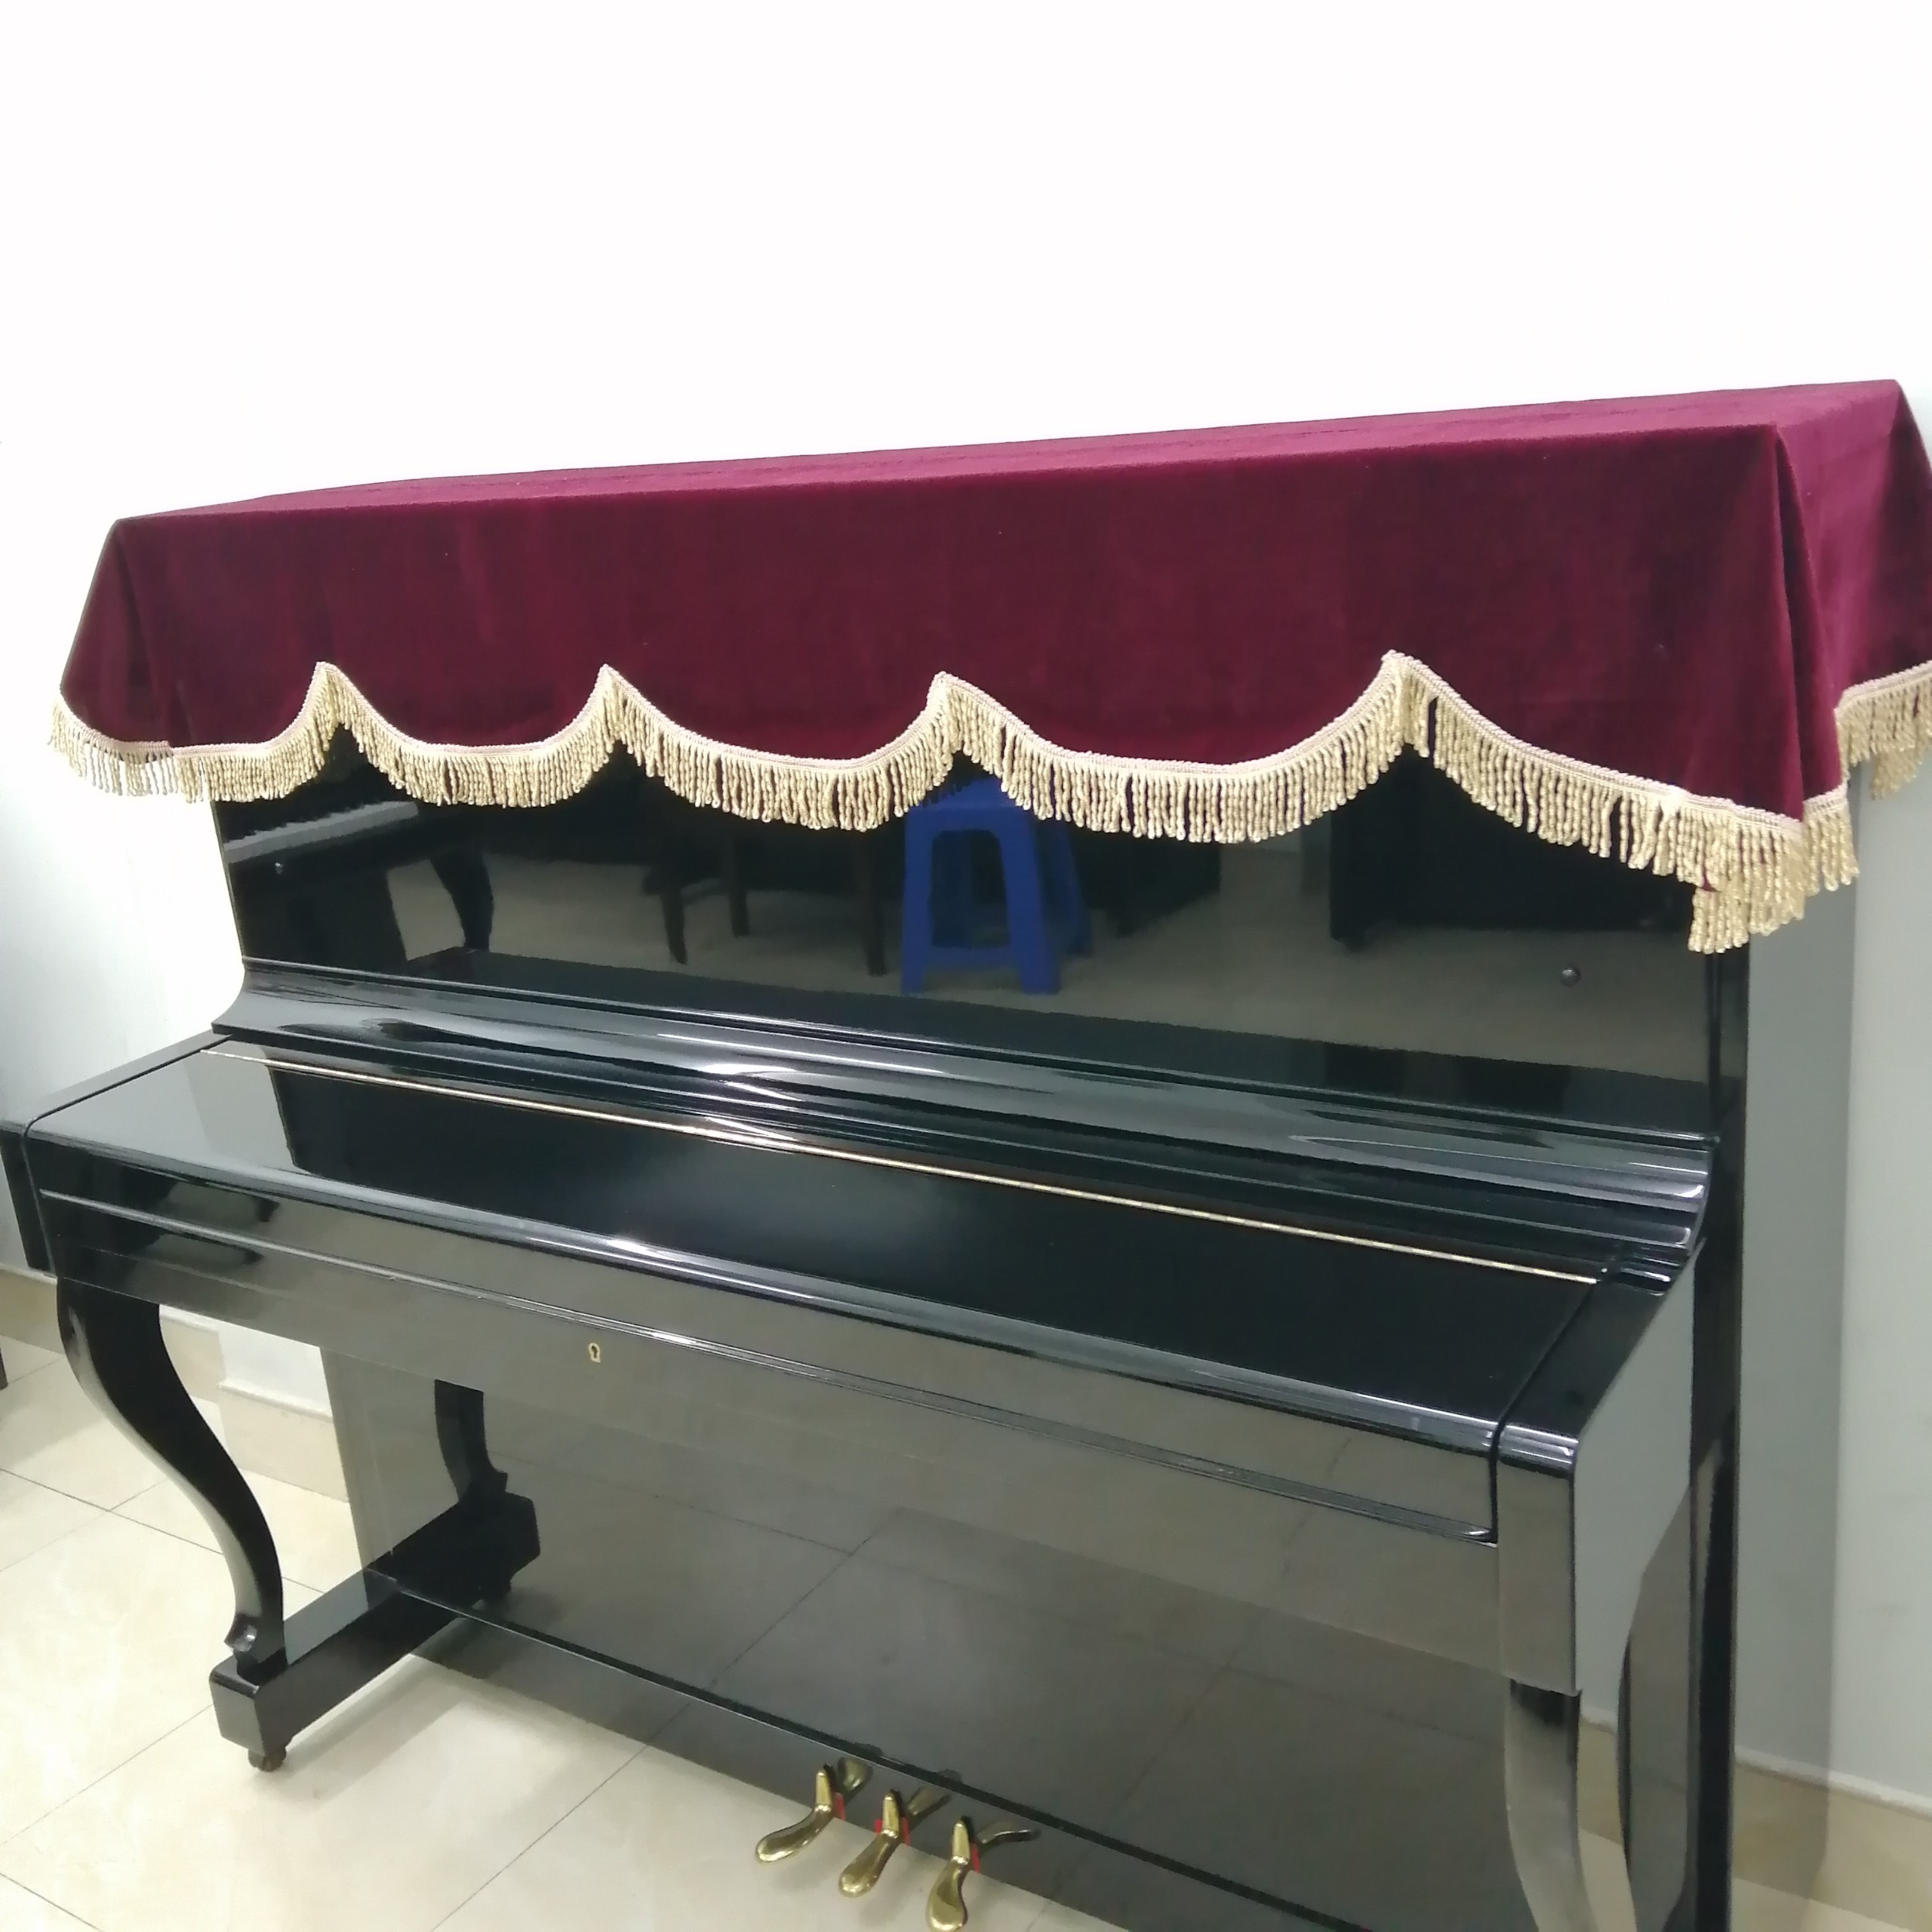 KHĂN PHỦ ĐÀN PIANO CƠ NHUNG ĐỎ ĐÔ LOẠI 1 MAY 2 LỚP DÀY PHỐI REN VÀNG SANG TRỌNG